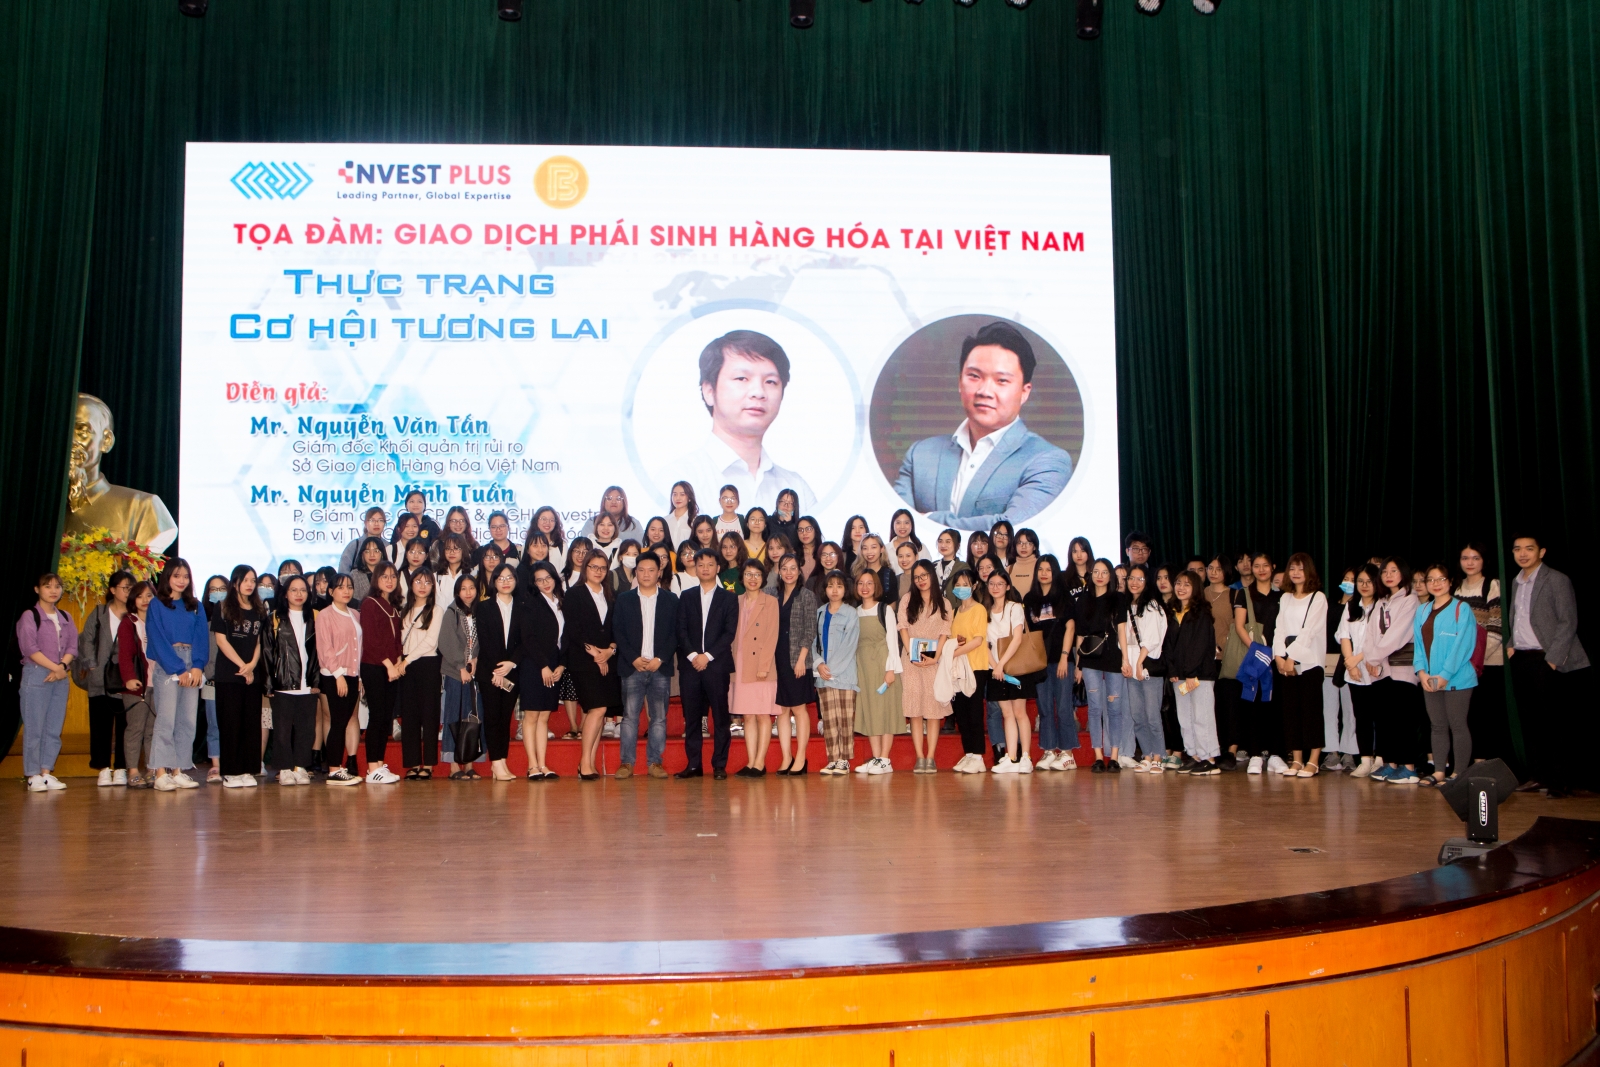 Sở Giao dịch Hàng hóa Việt Nam (MXV) phối hợp với Học viện Ngân hàng đồng tổ chức Tọa đàm “Giao dịch Hàng hóa phái sinh tại Việt Nam – Thực trạng cơ hội tương lai”